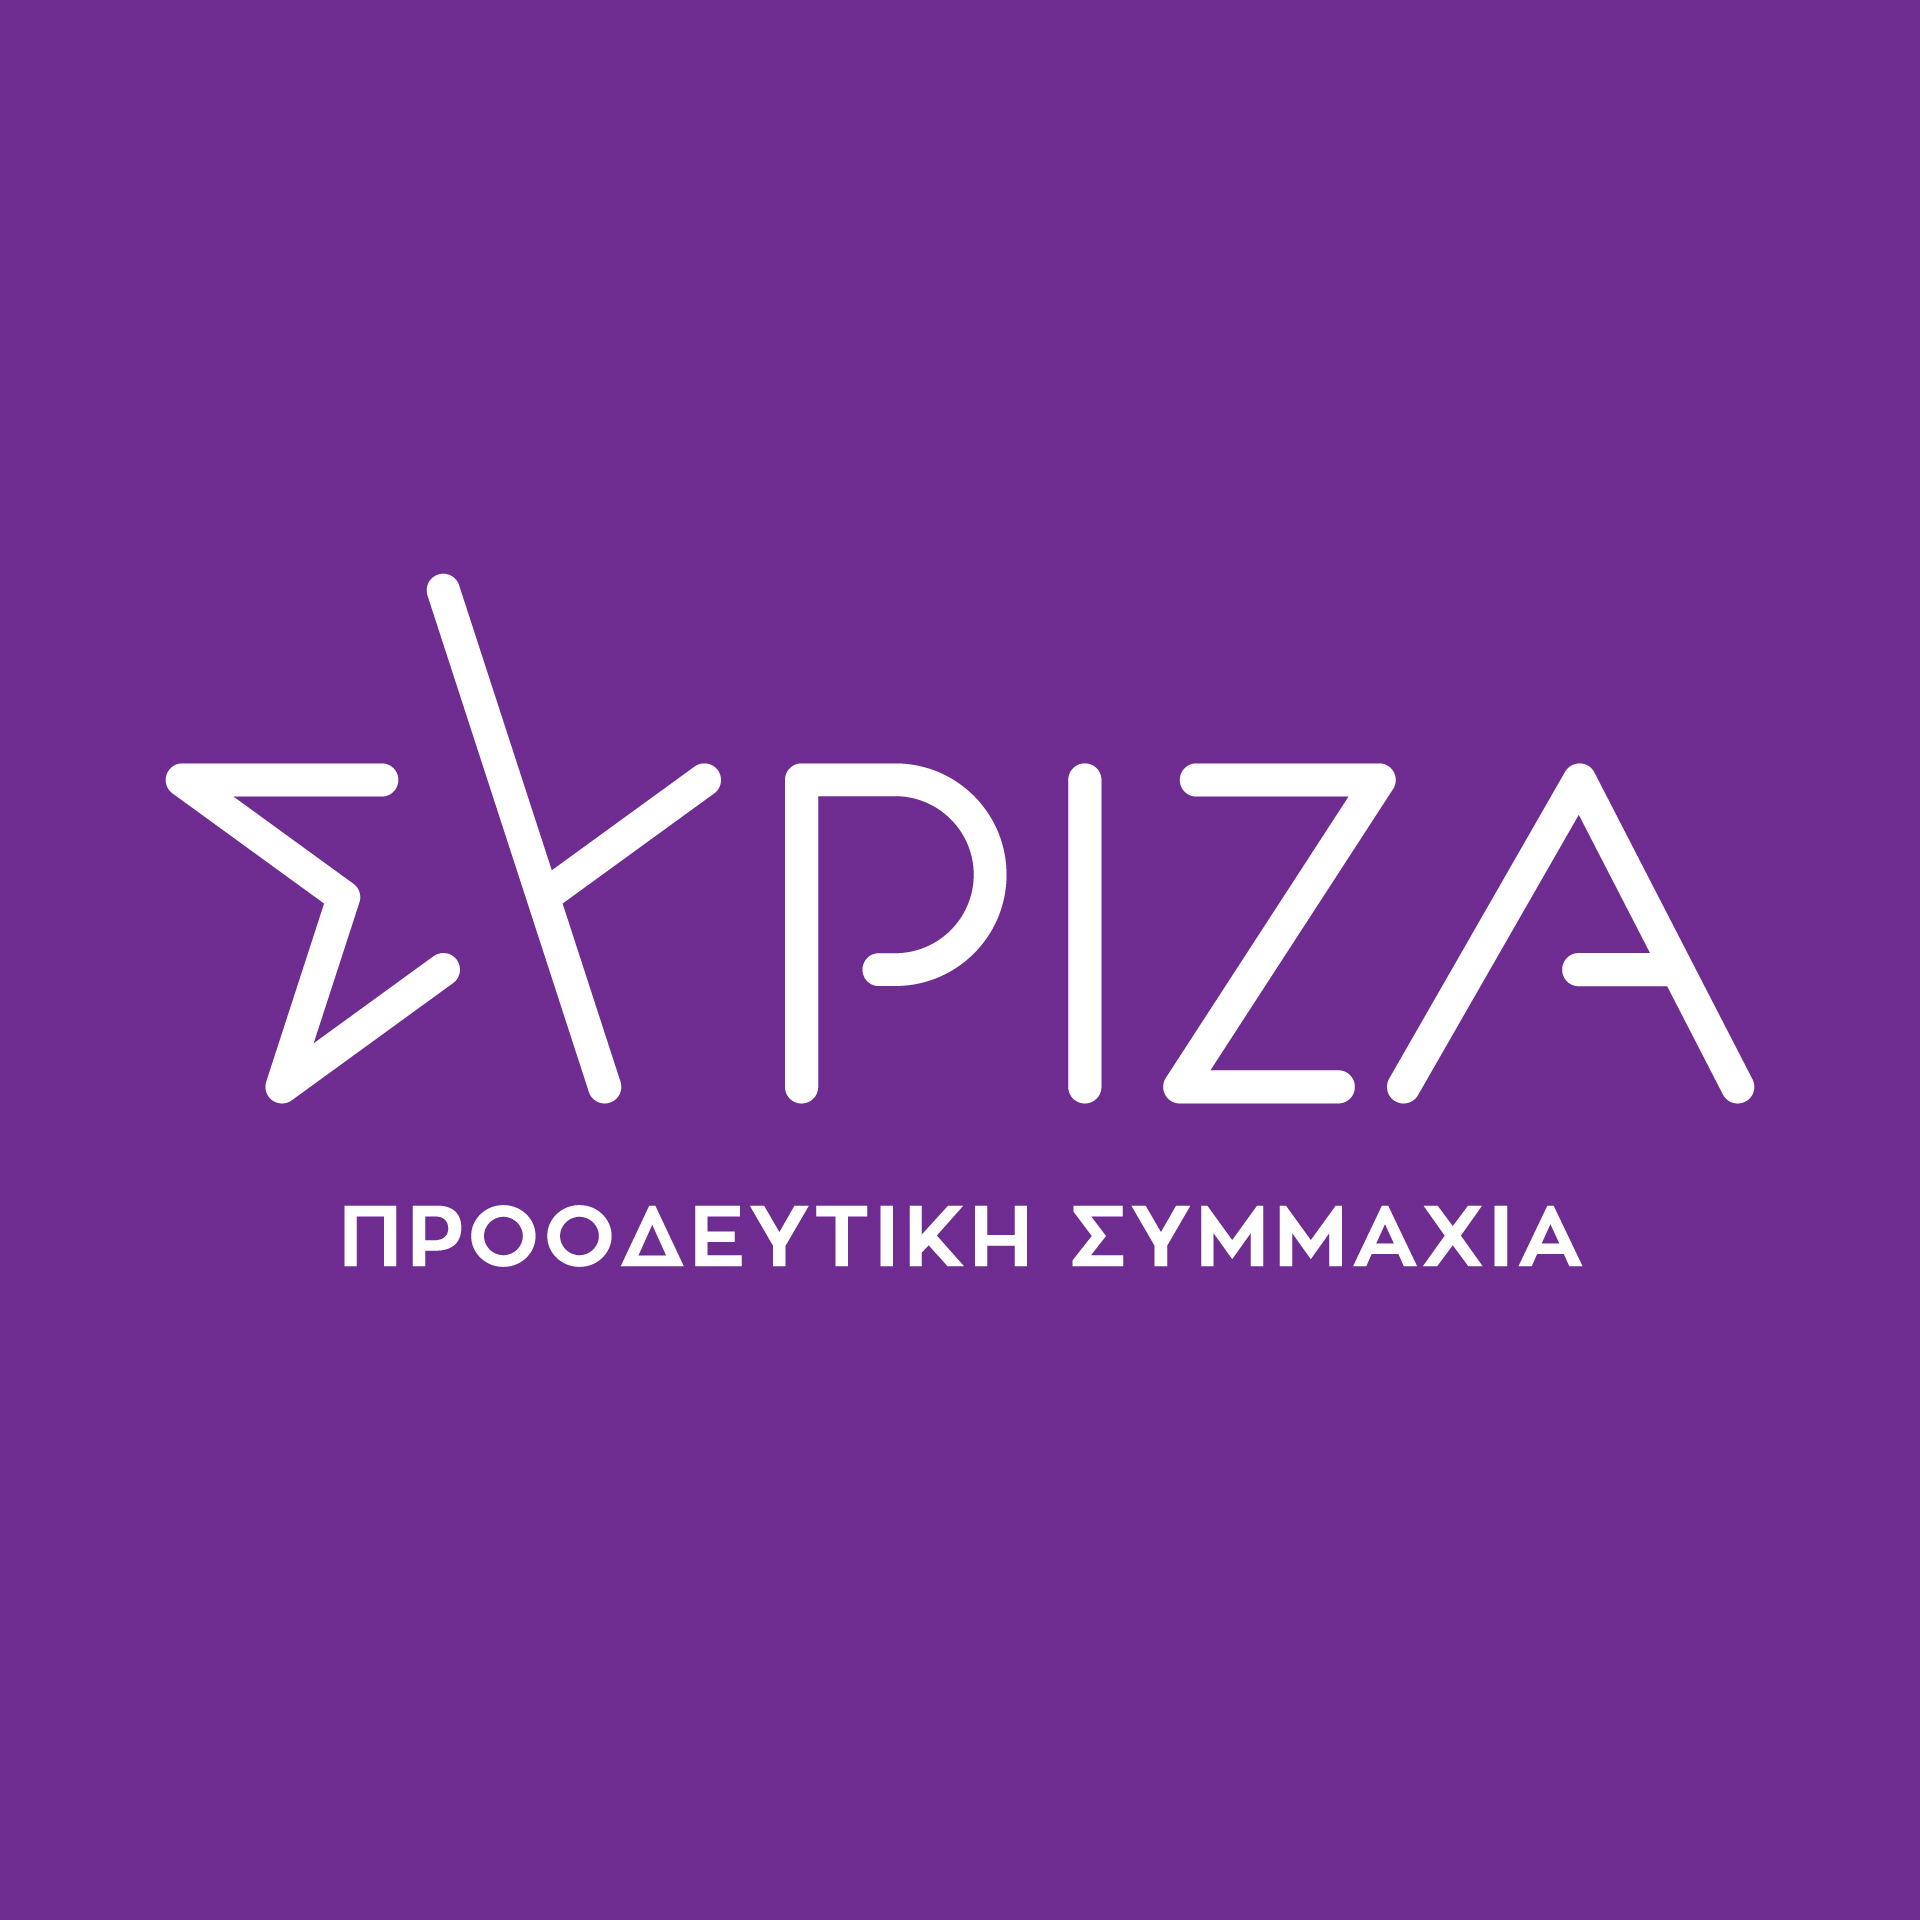 Ερώτηση βουλευτών ΣΥΡΙΖΑ: «Σε παύση κάθε ενέργεια για την συντήρηση του Εθνικού Θεάτρου Ρόδου. Η τοπική κοινωνία ζητά τη συνέχιση των προσπαθειών για την αποκατάστασή του»